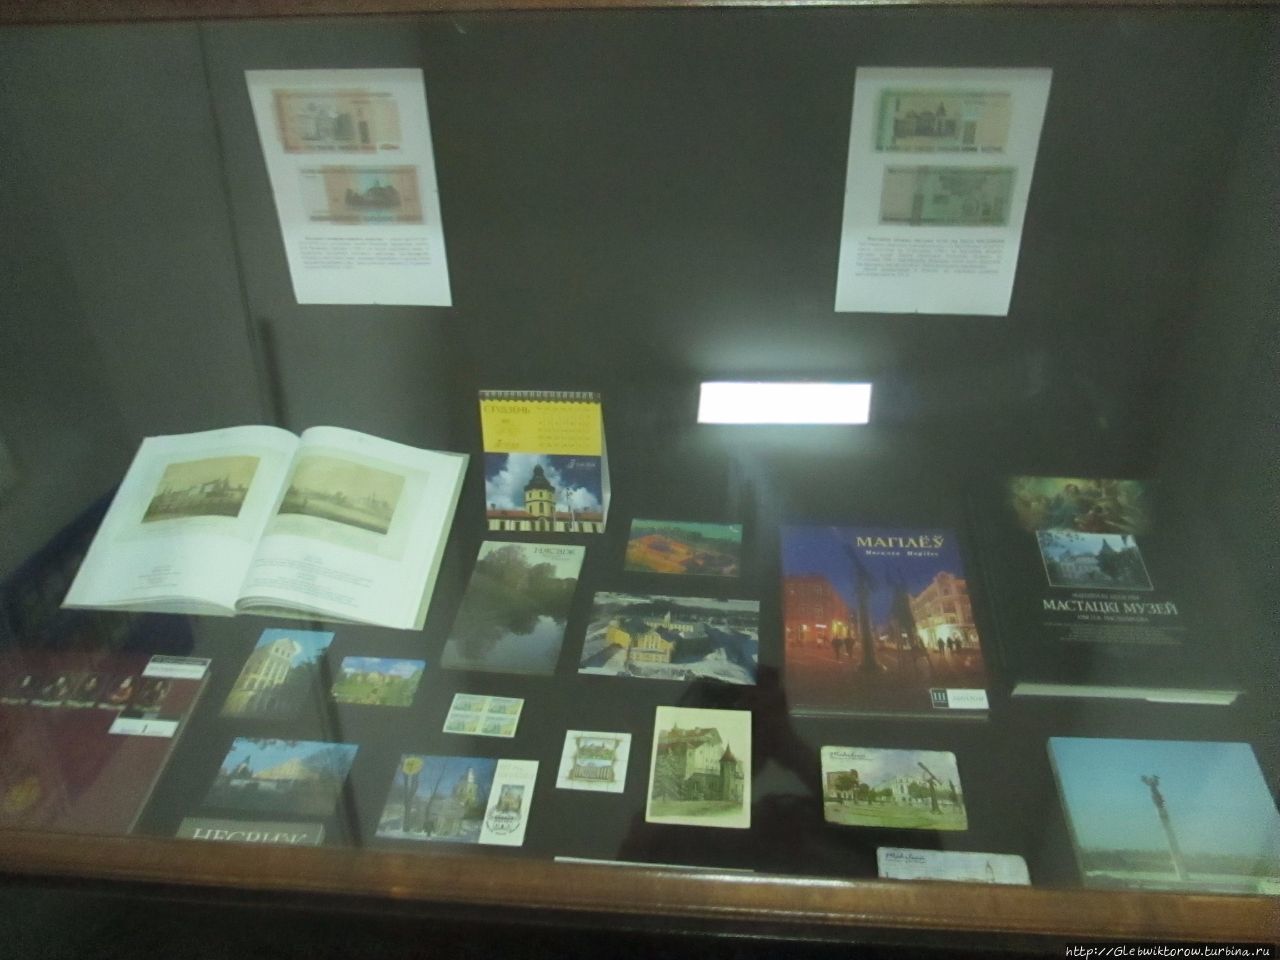 Познавательный музей для книголюбов